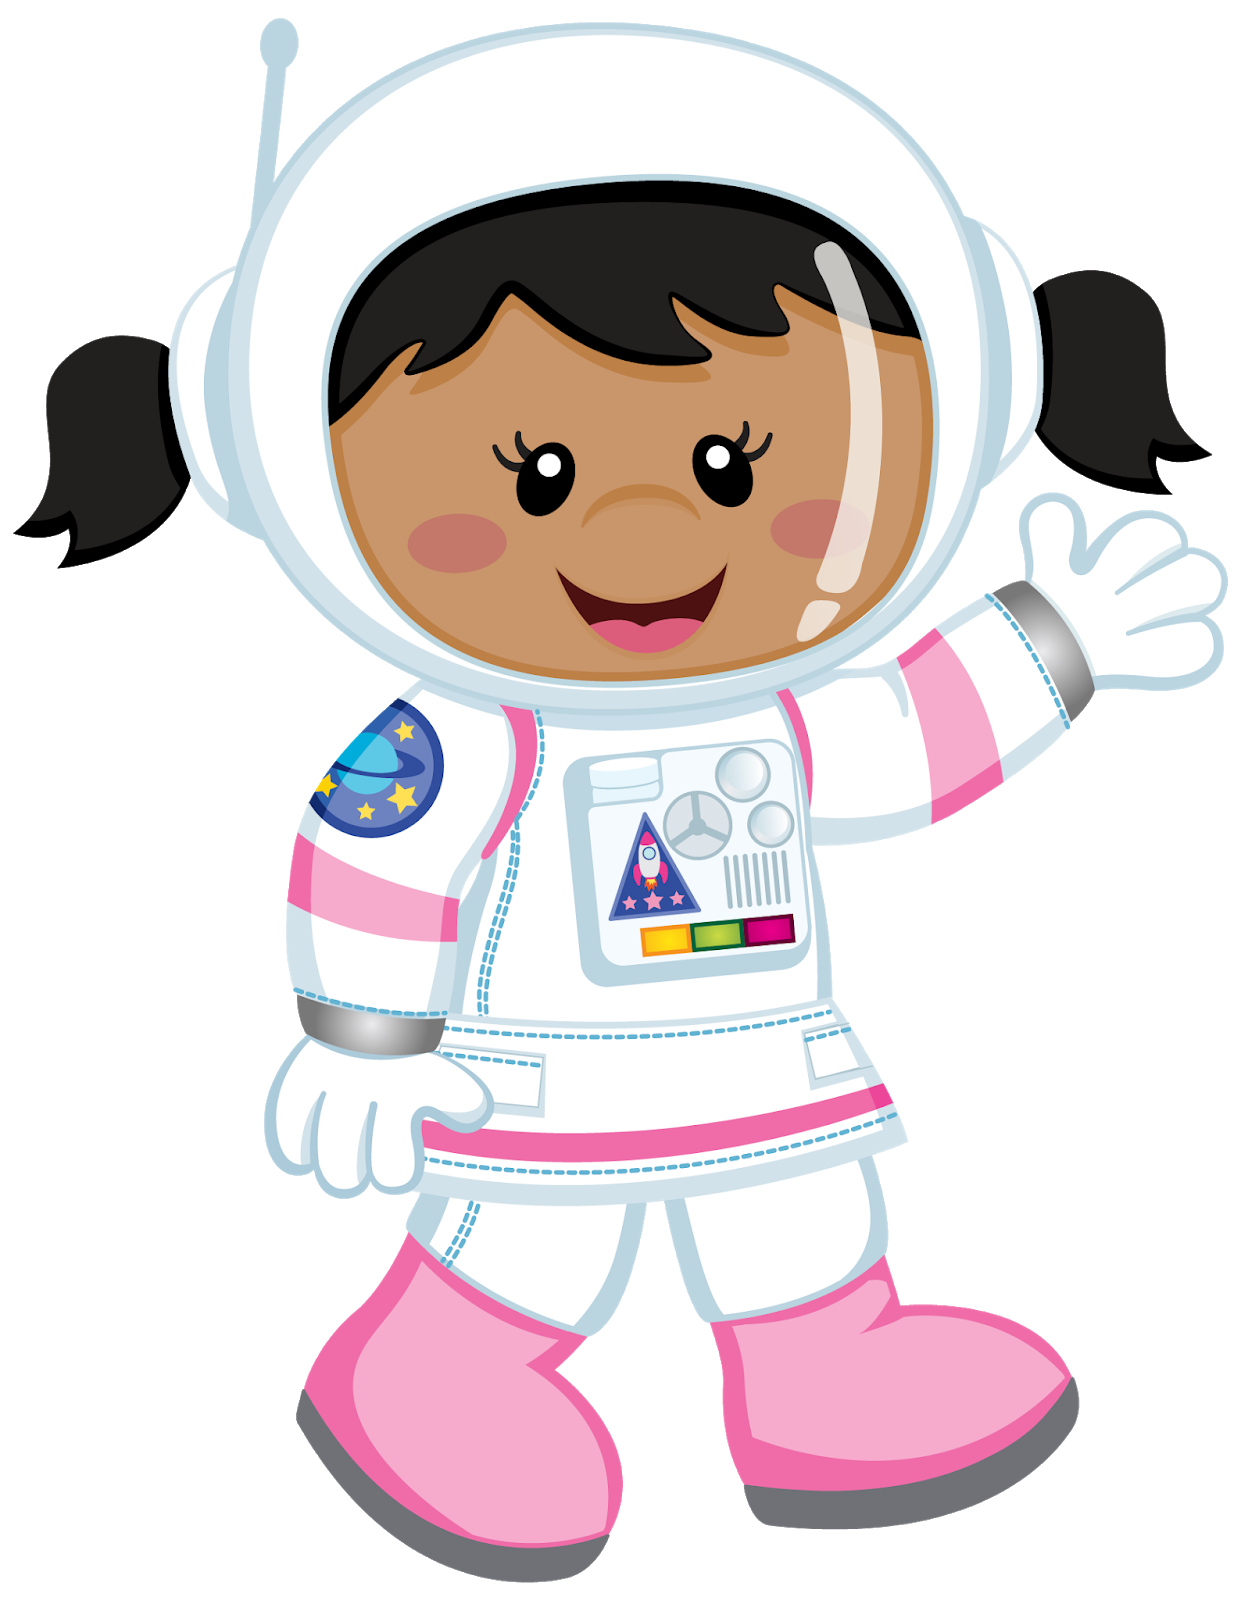 Космонавт картинки для детей дошкольного возраста. Космонавт для детей. Астронавт мультяшный. Космонавт для детей без фона. Малыш космонавт.